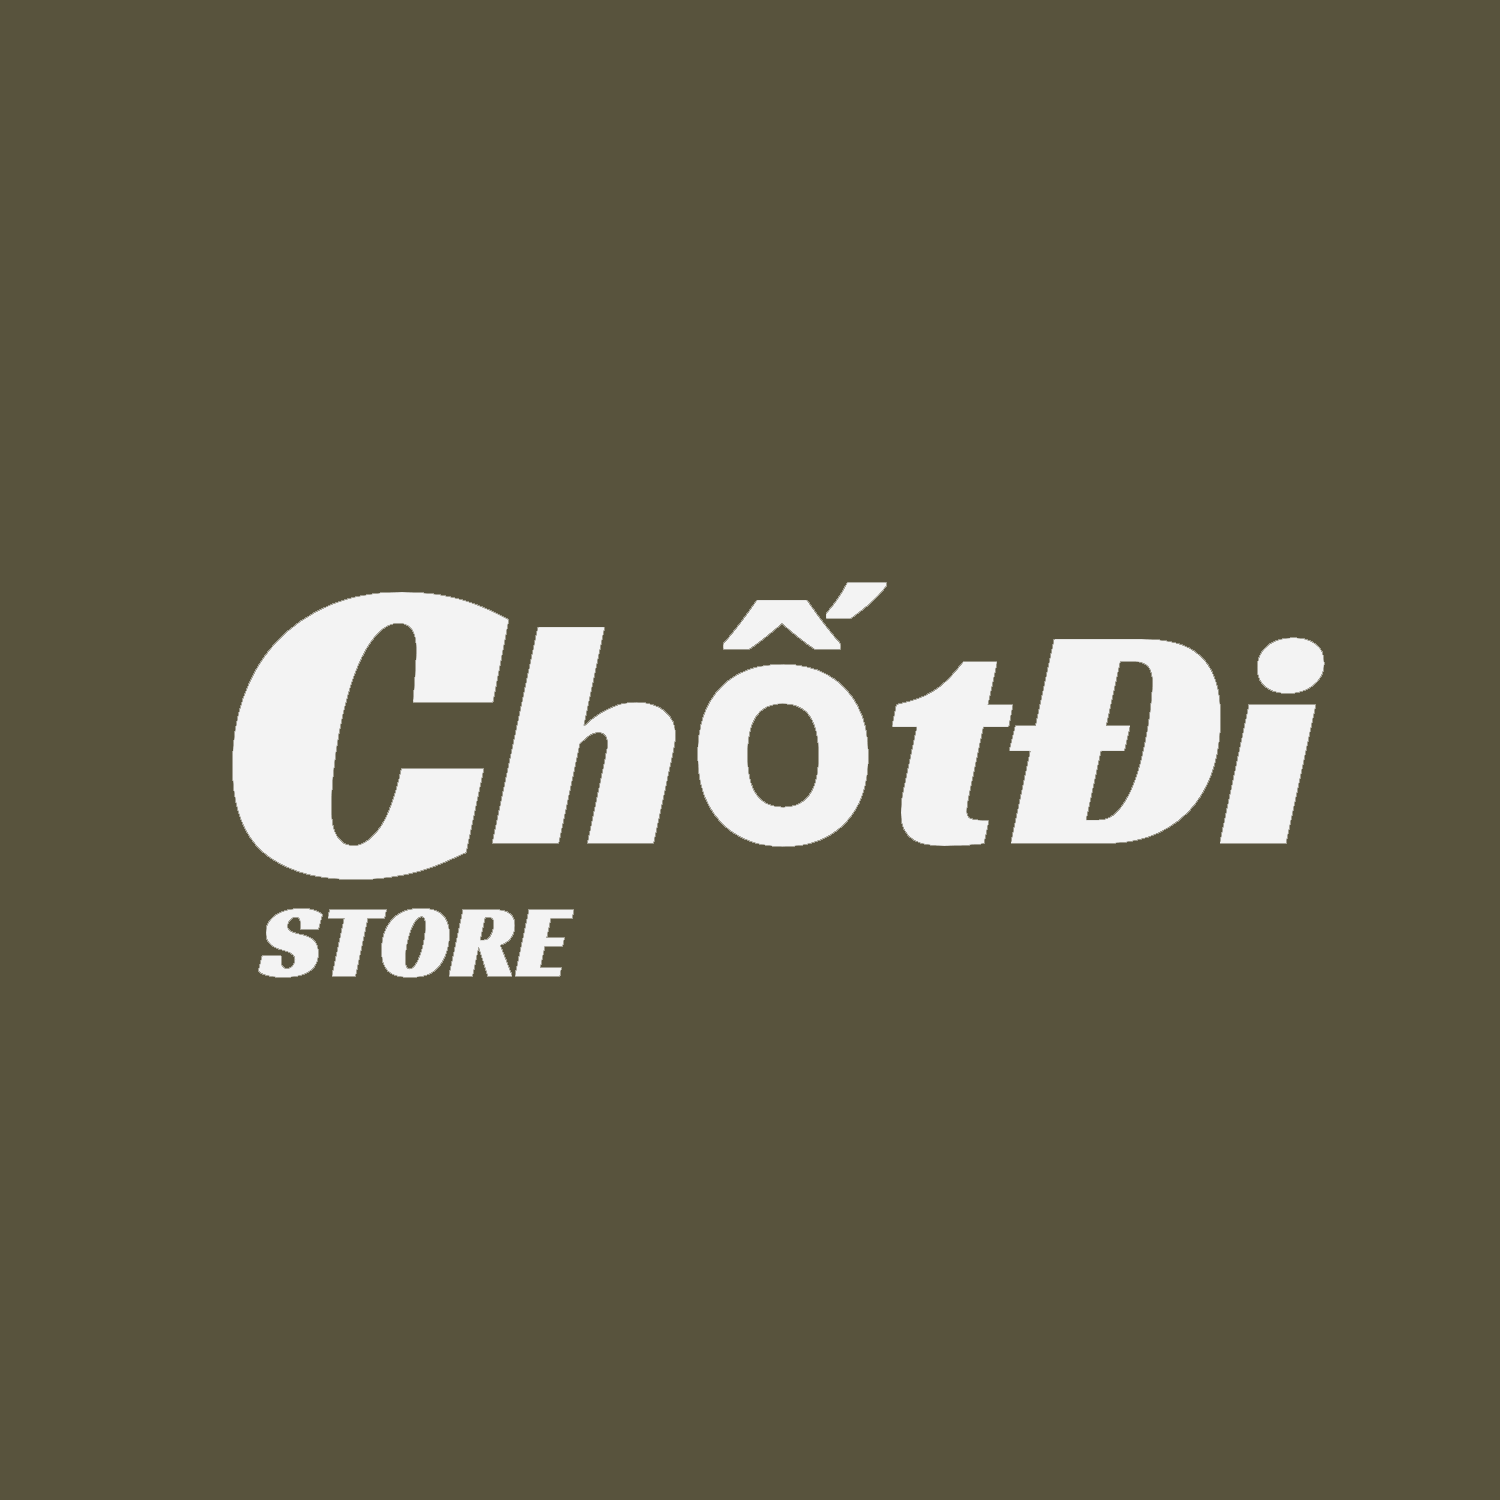 Chốt Đi Store logo